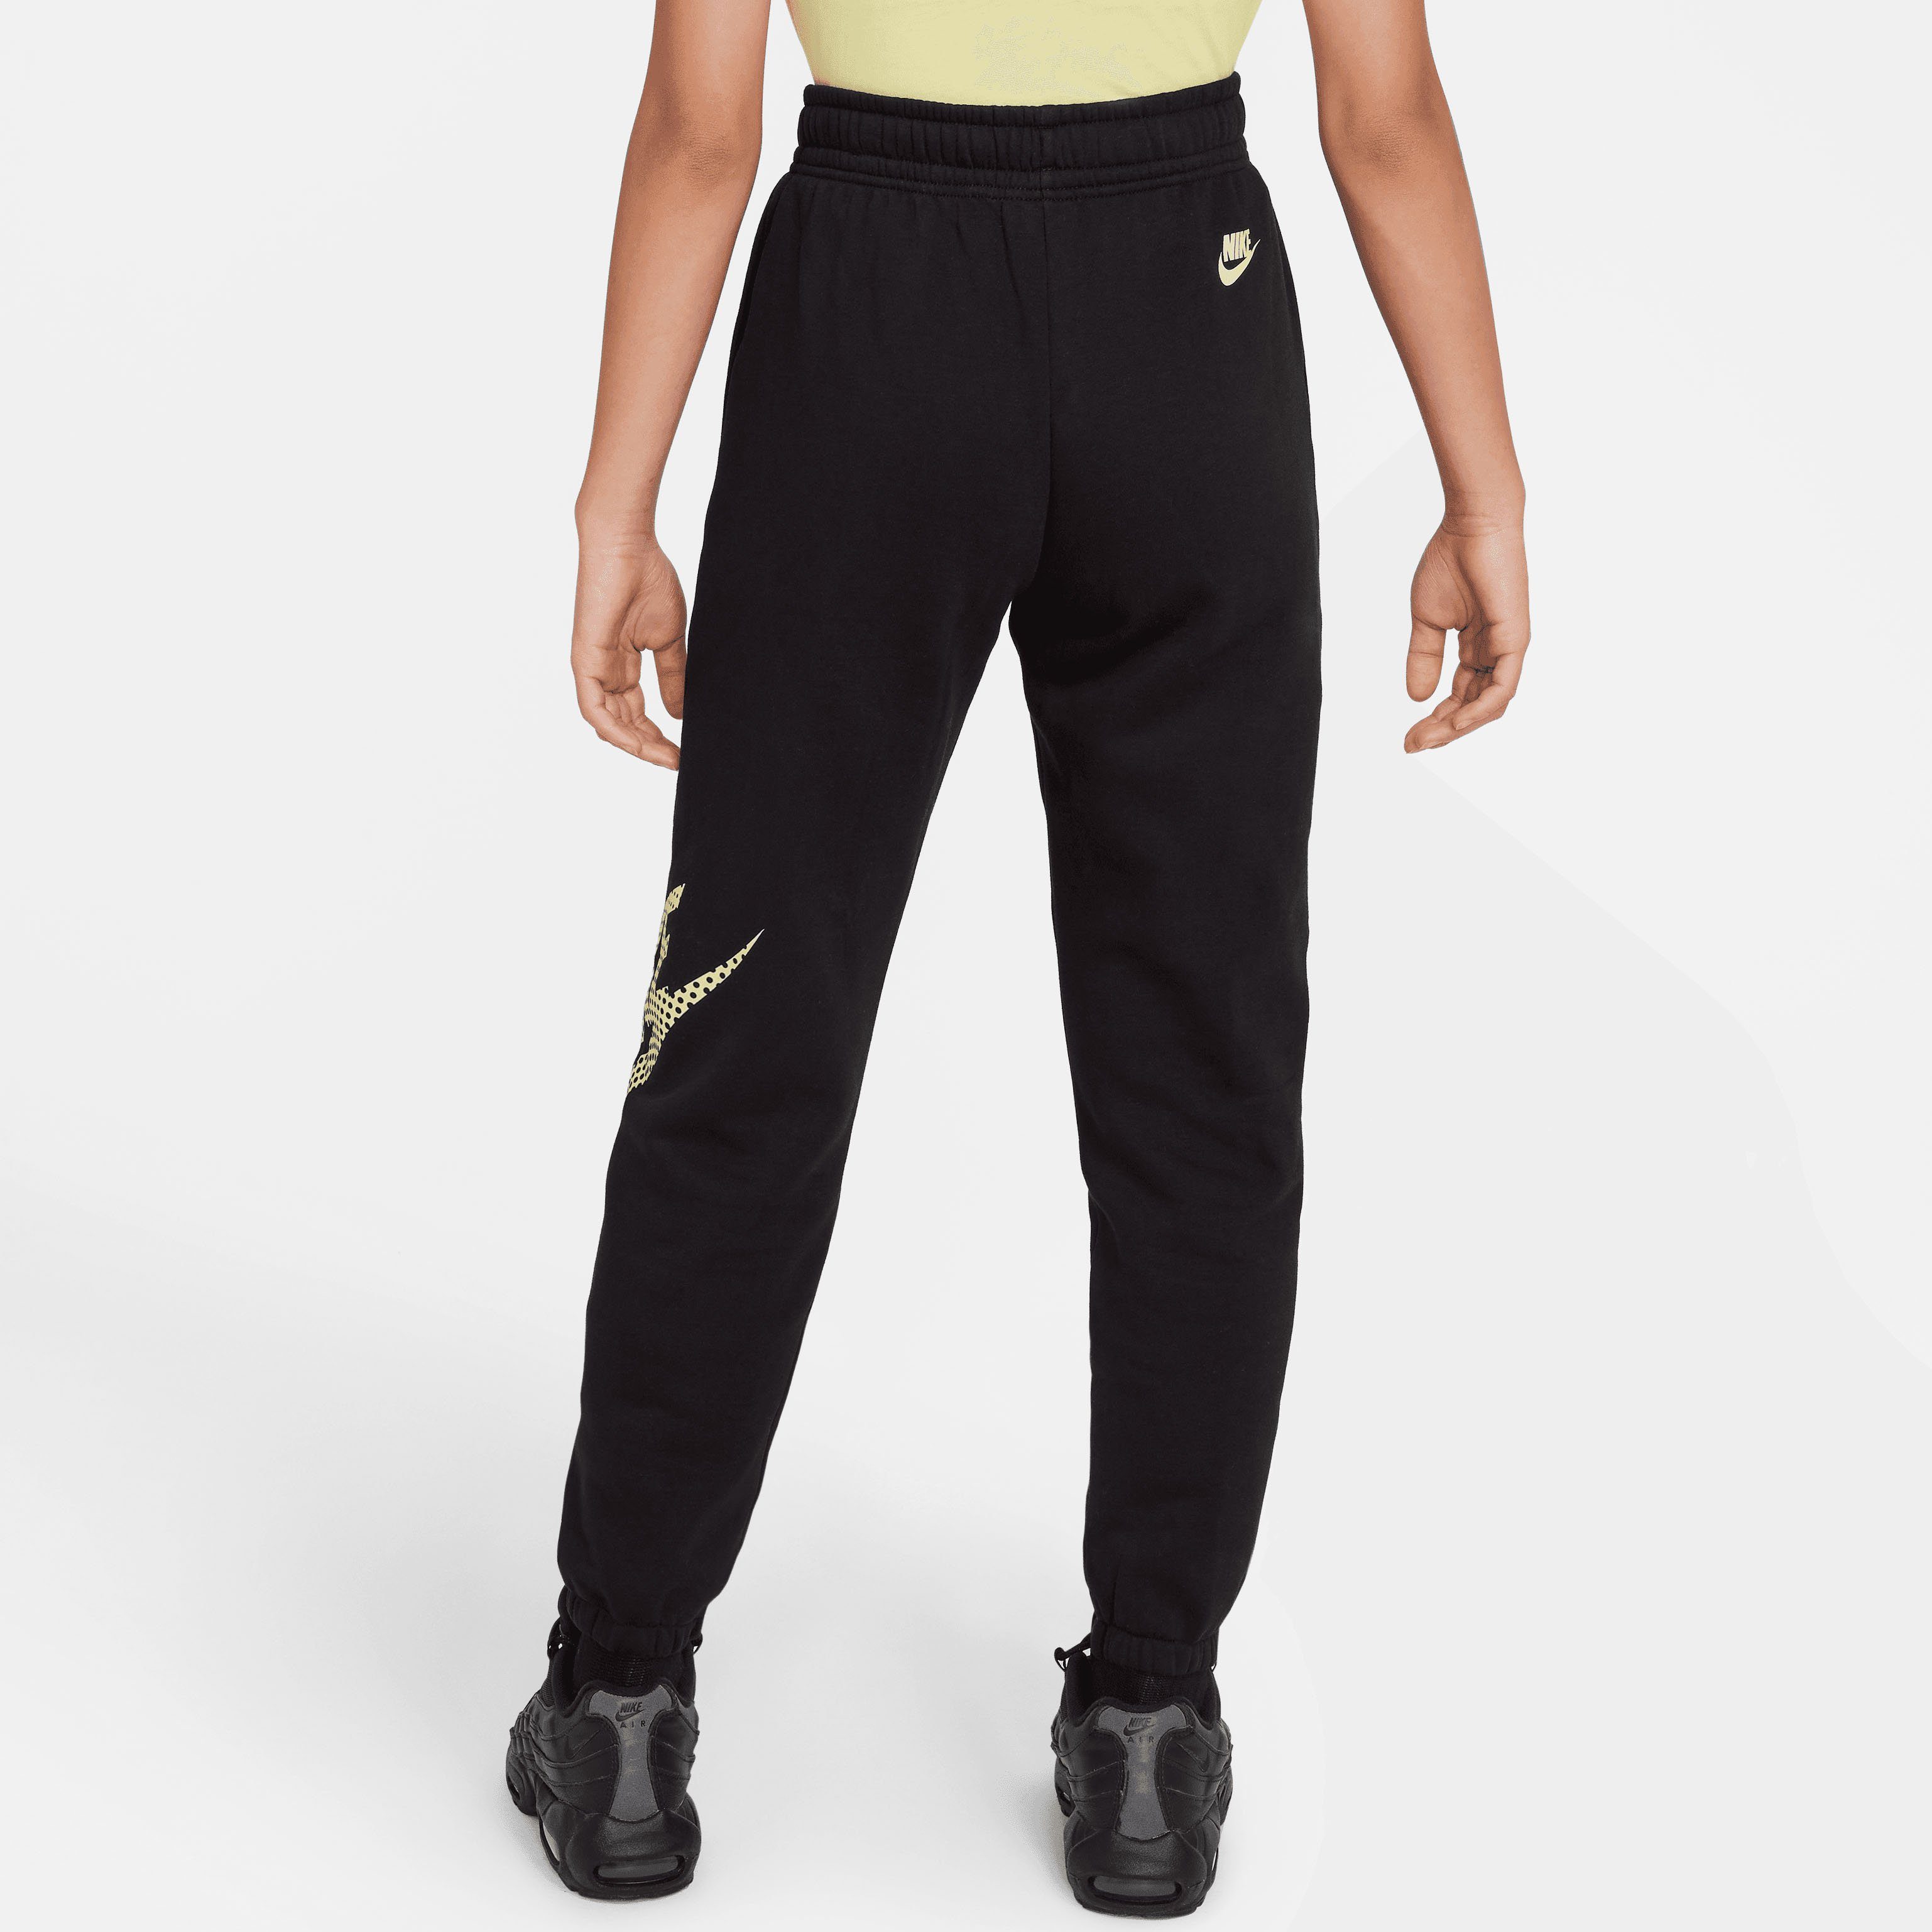 NSW BLACK PANT FLC OS G DNC Sportswear Jogginghose Nike